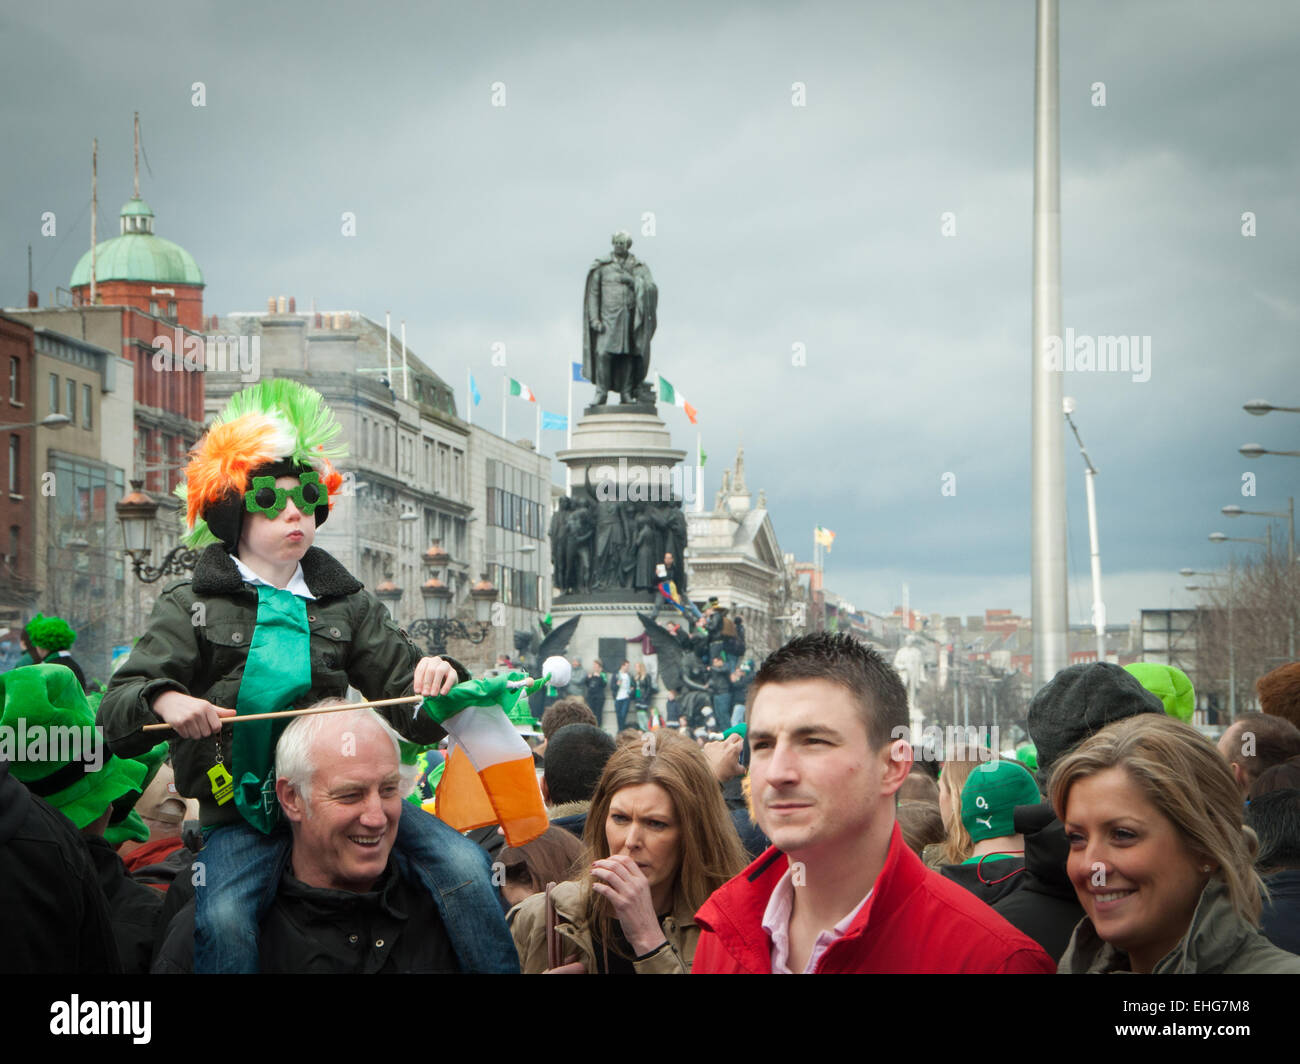 Junge auf Vaters Schultern hat irische Perücke, Brille und irische Flagge am St. Patricks Day in O'Connell Street Dublin Irland Stockfoto